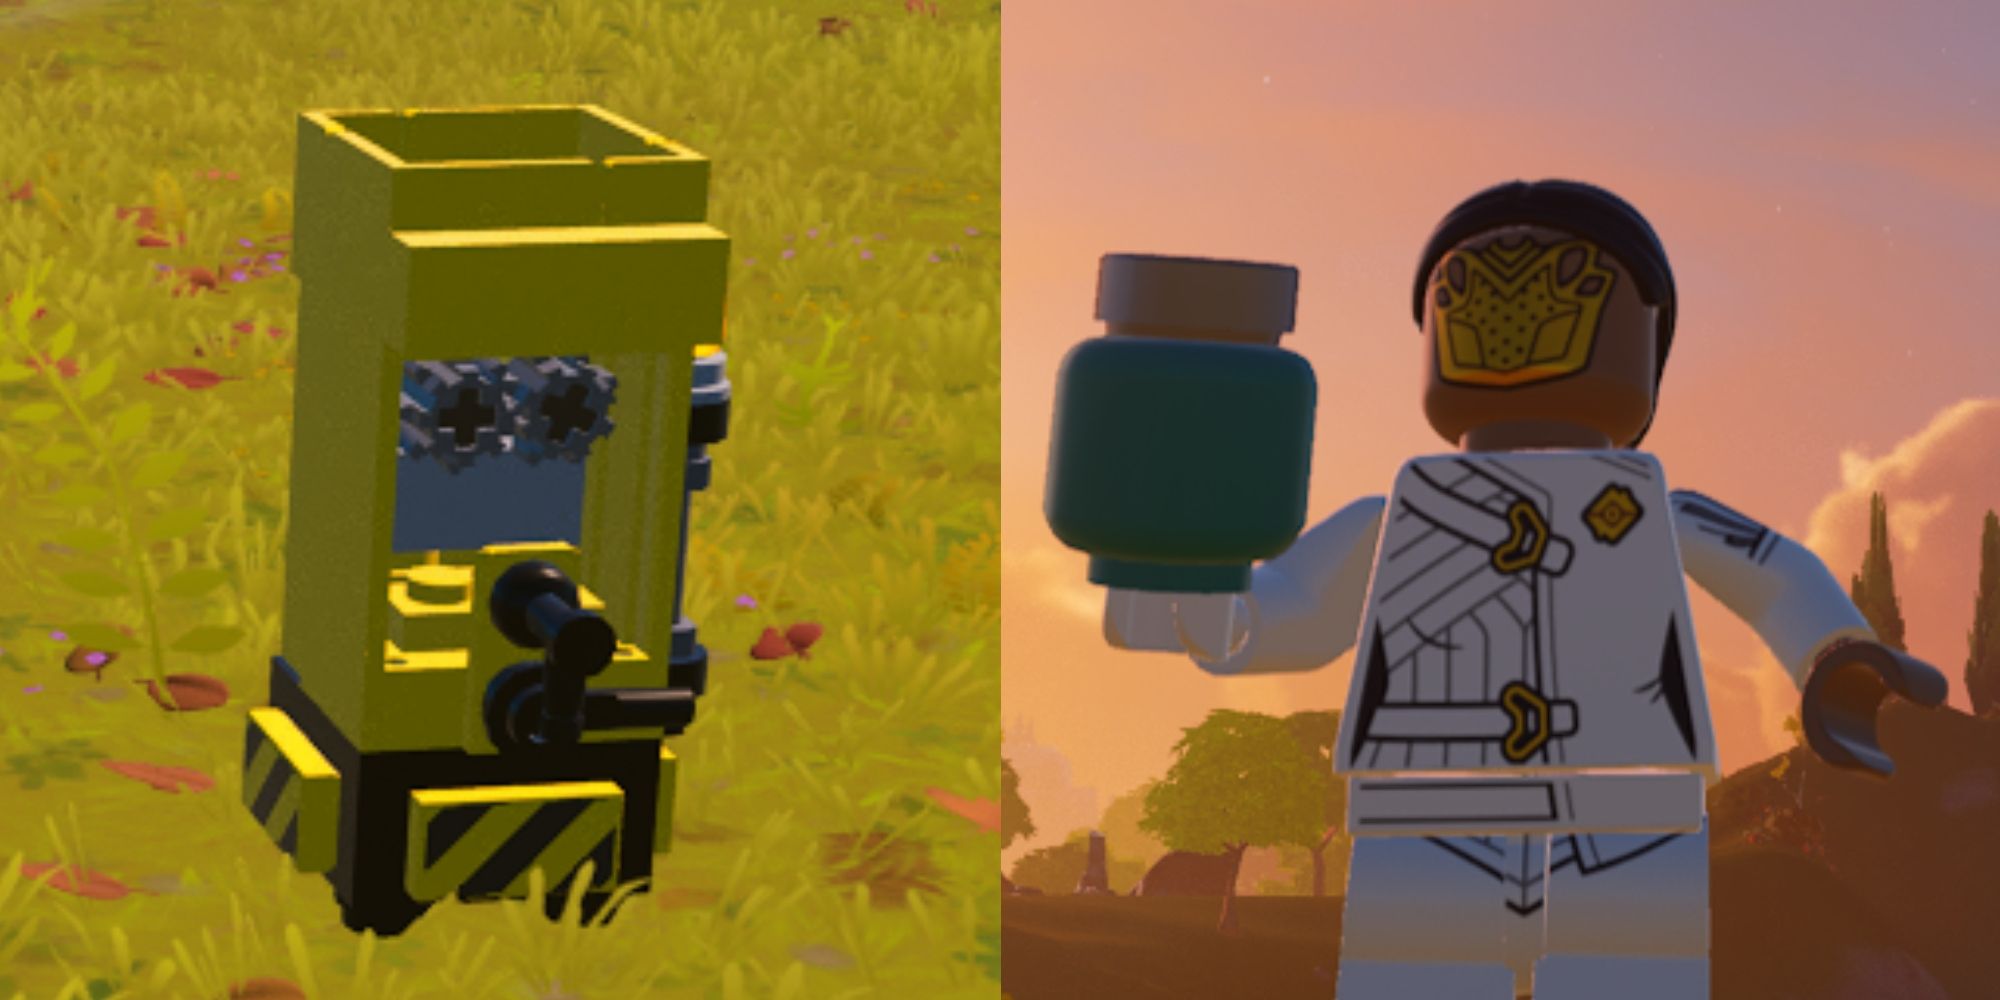 Lego Fortnite juicer on grass and player holding slurp juice